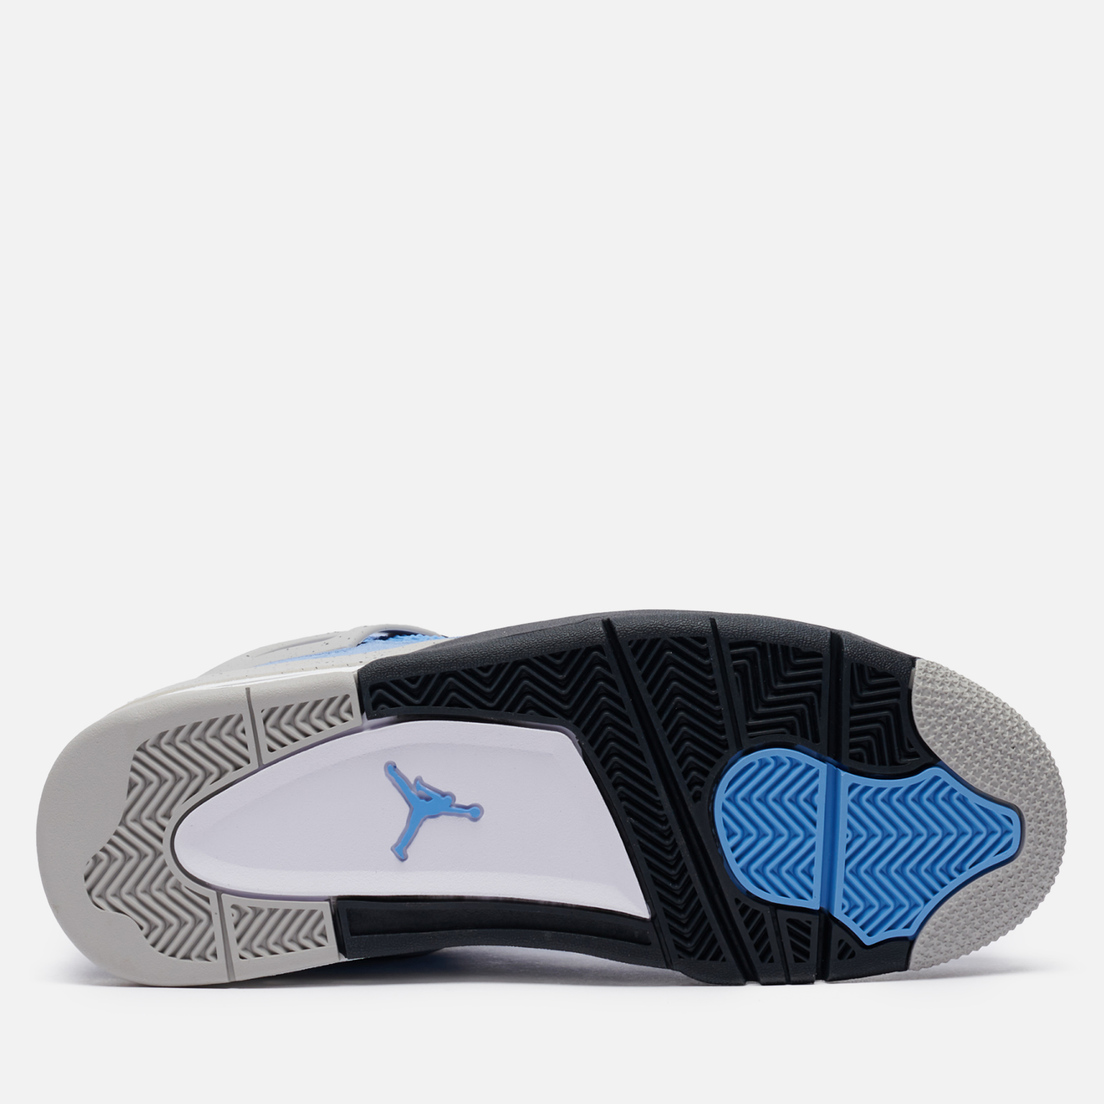 Jordan Мужские кроссовки Air Jordan 4 Retro University Blue